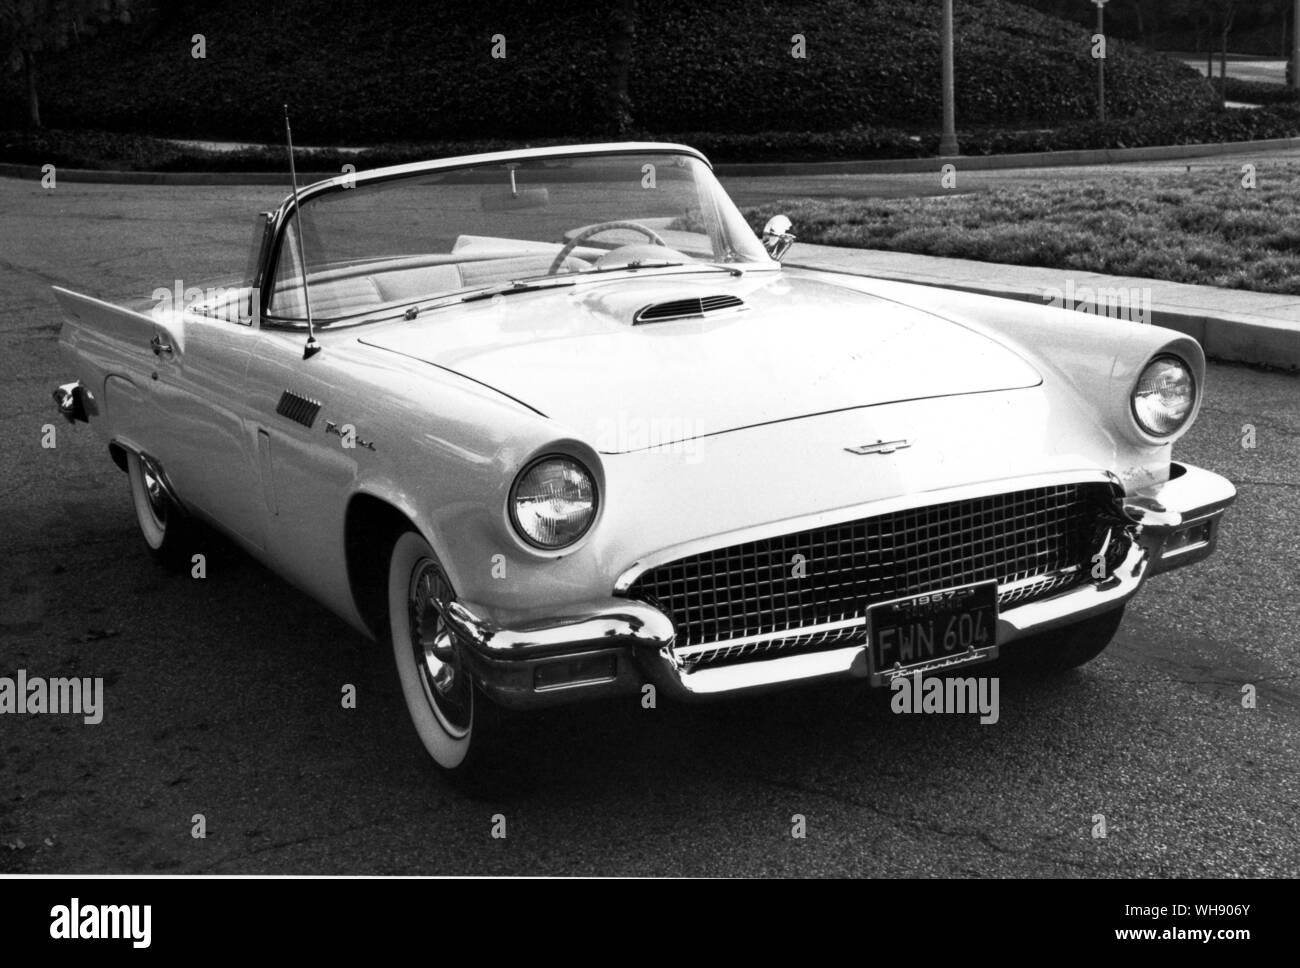 The 1957 Ford Thunderbird. Stock Photo